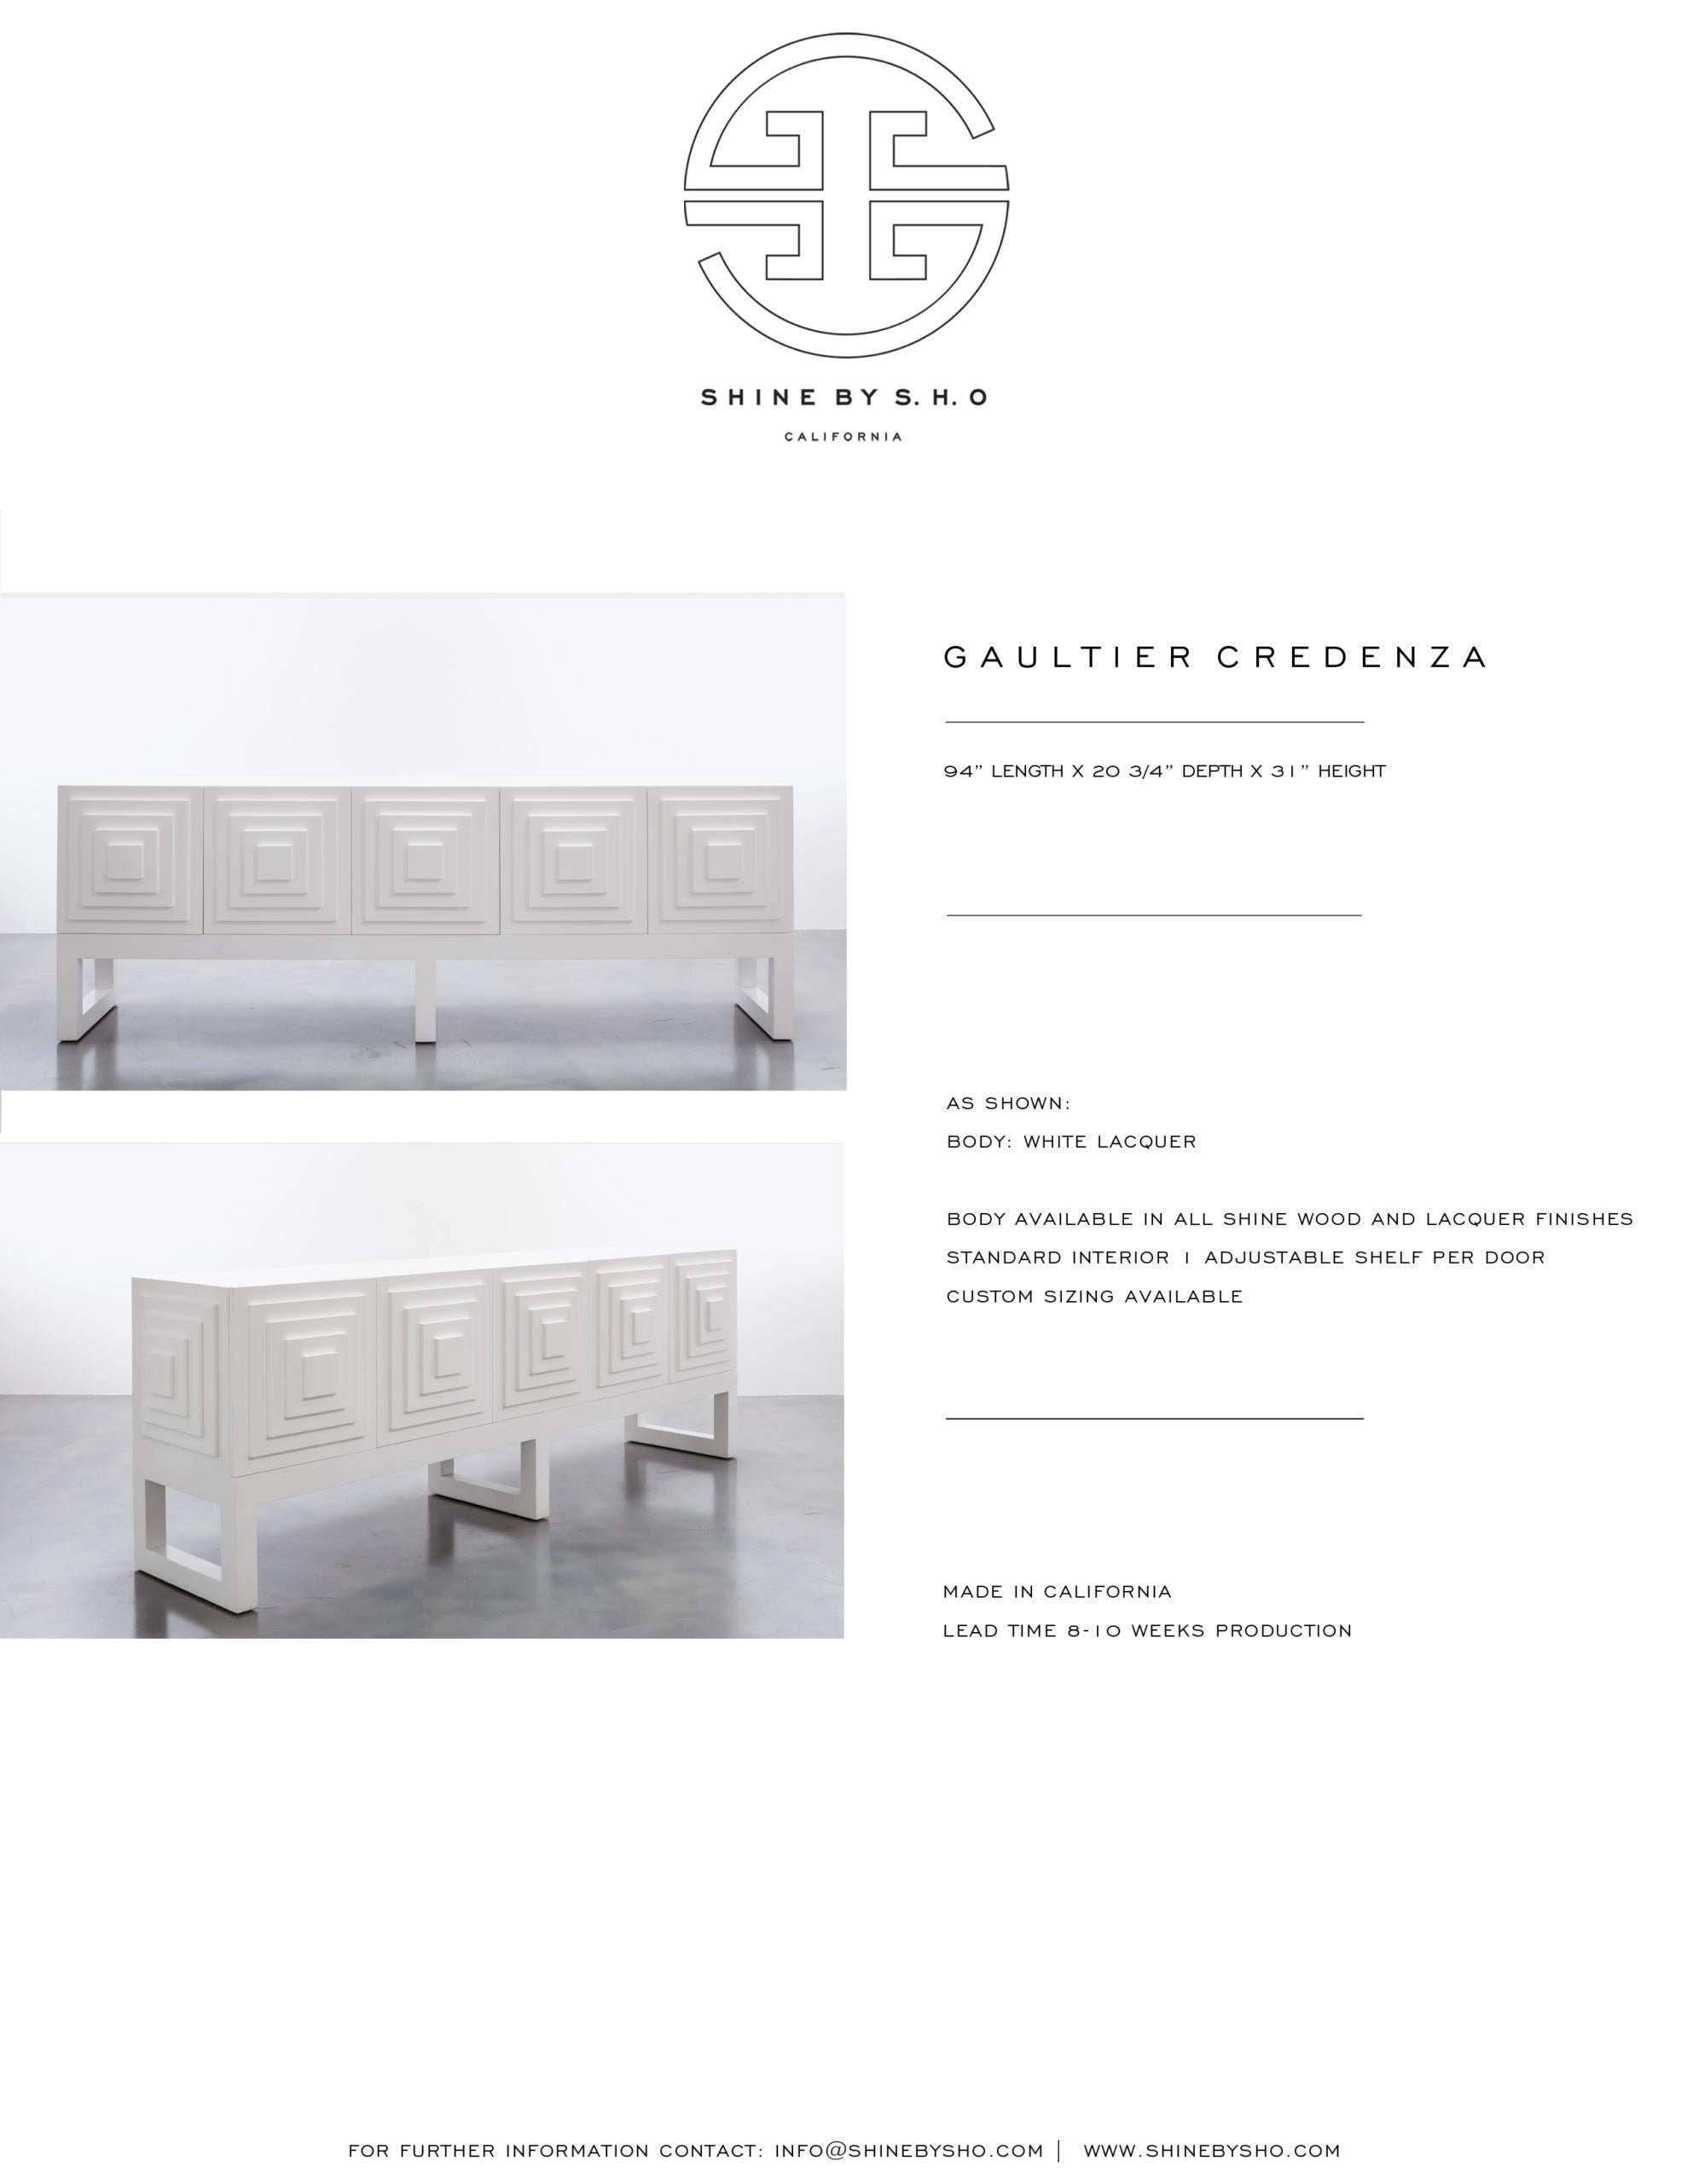 Américain GAULTIER CREDENZA - Armoire géométrique moderne en finition laquée blanche en vente